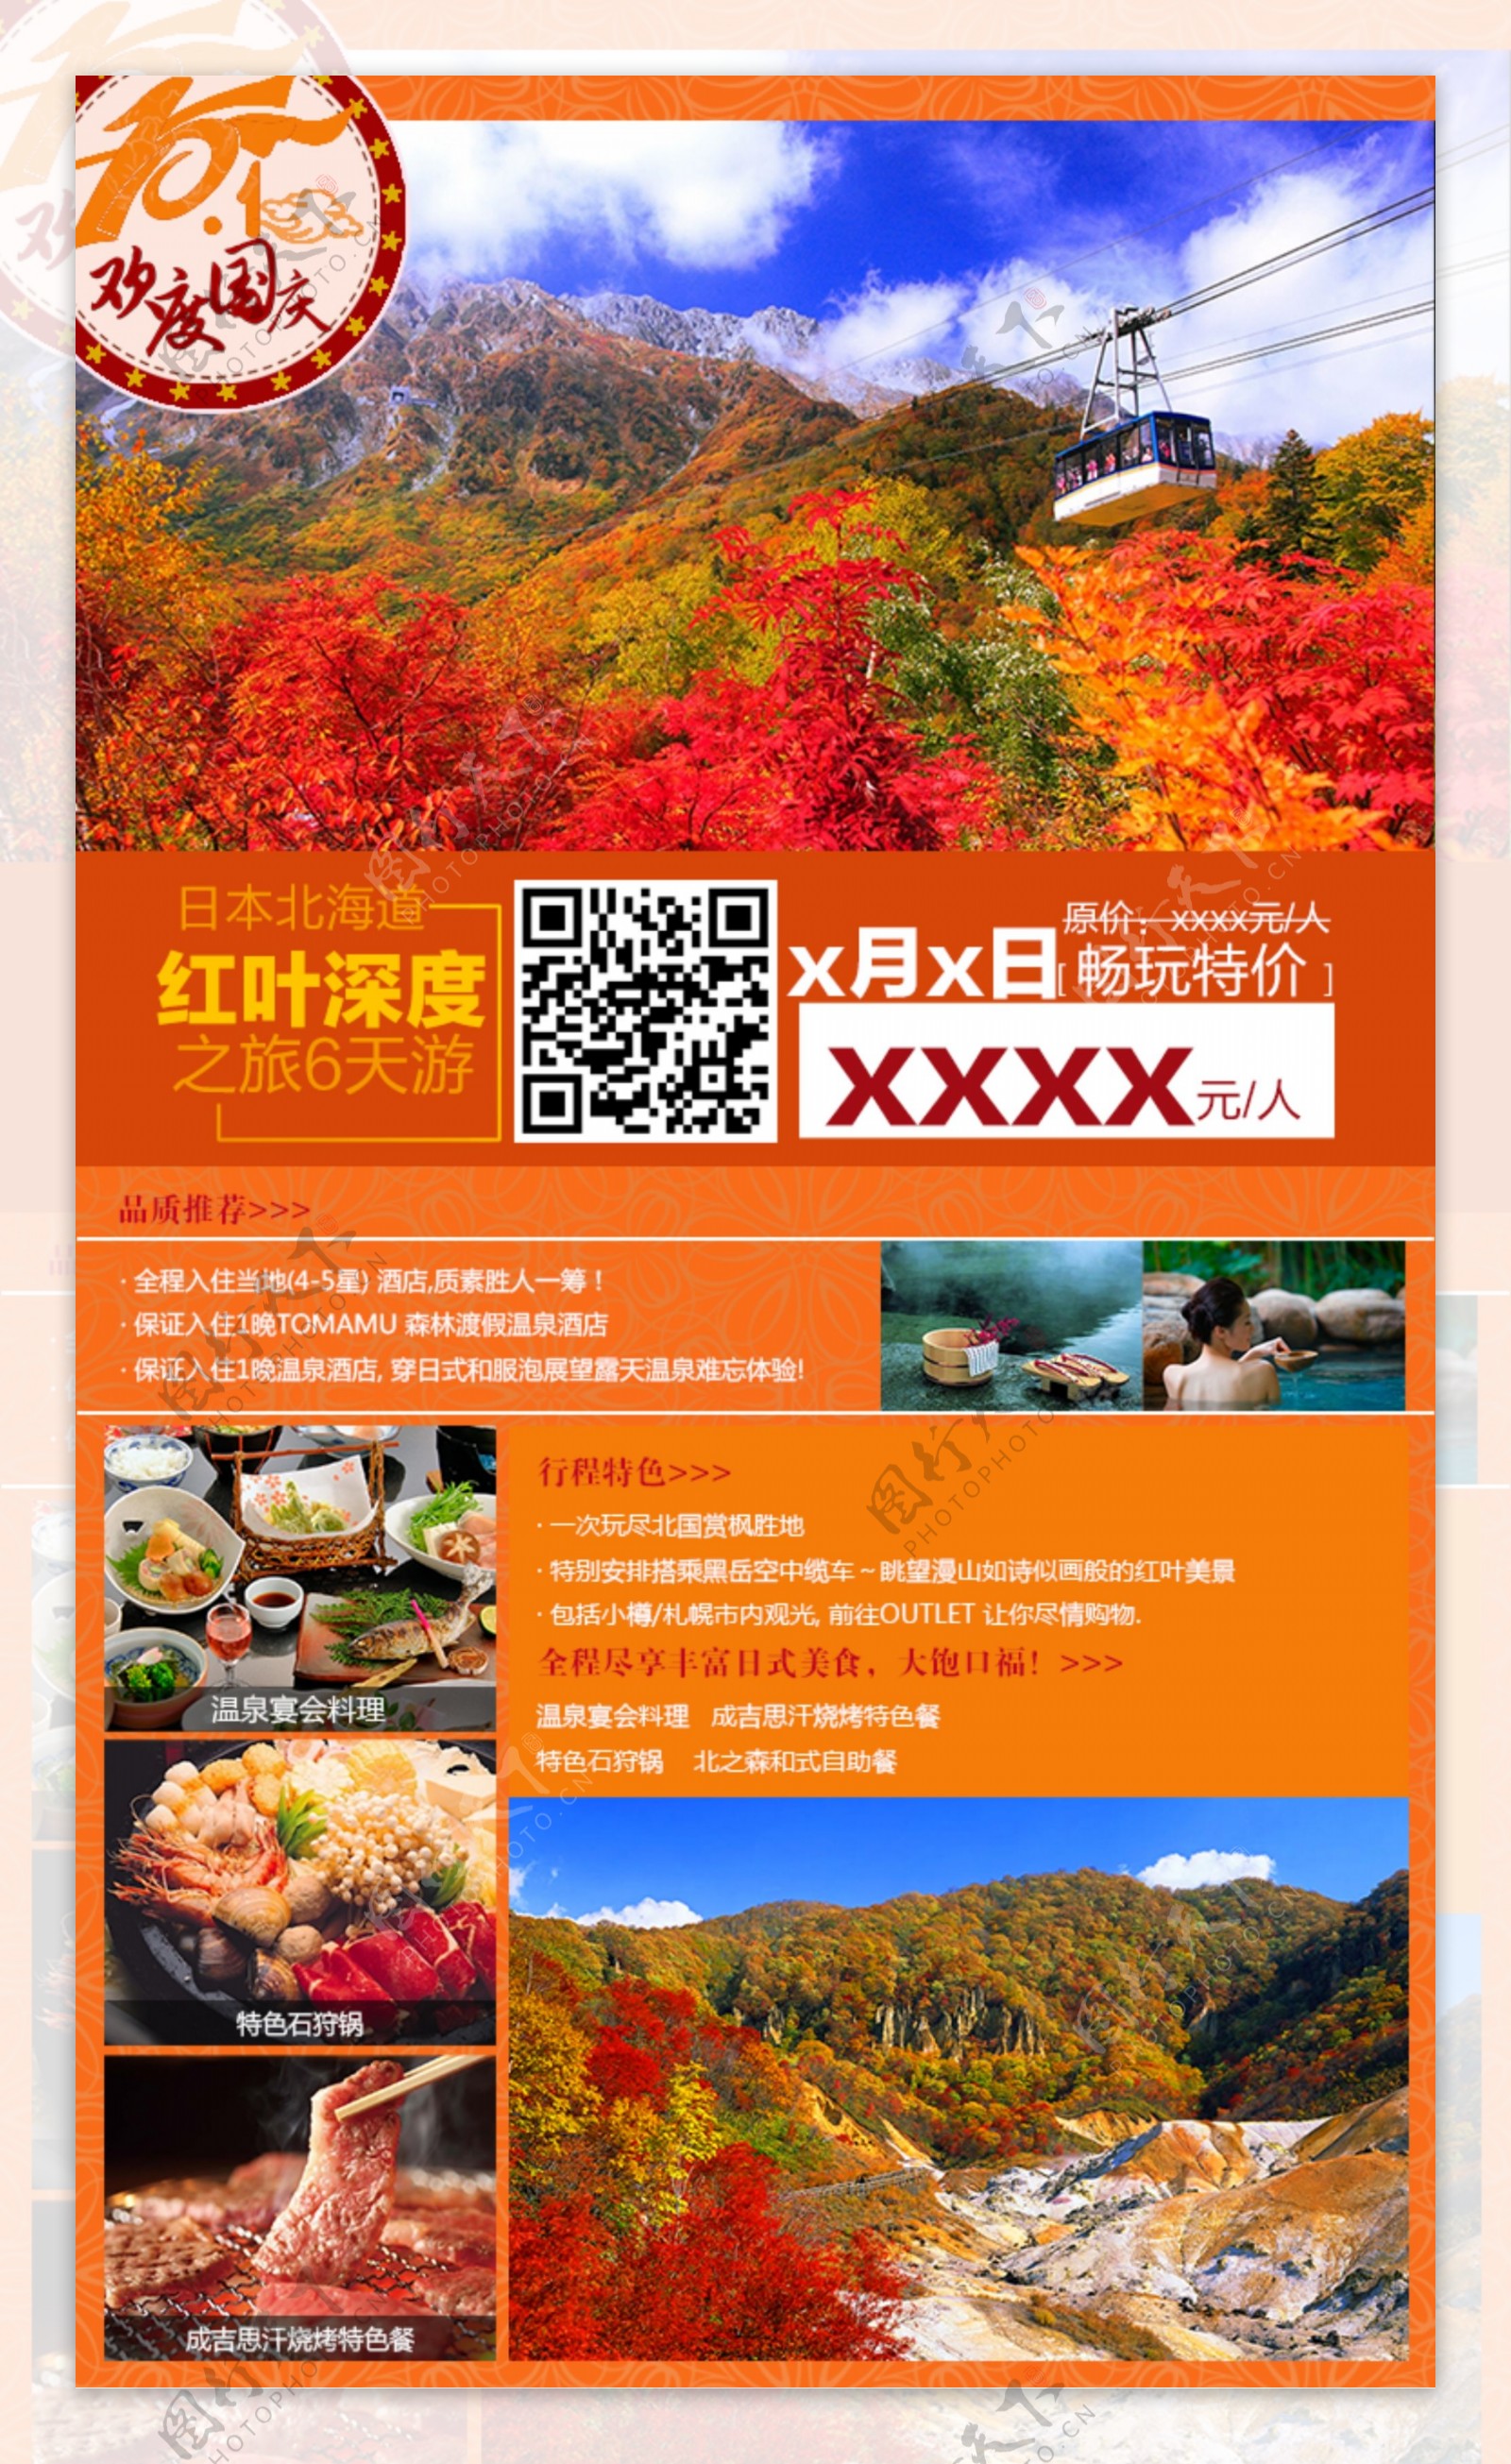 北海道红叶深度之旅6天游橙色